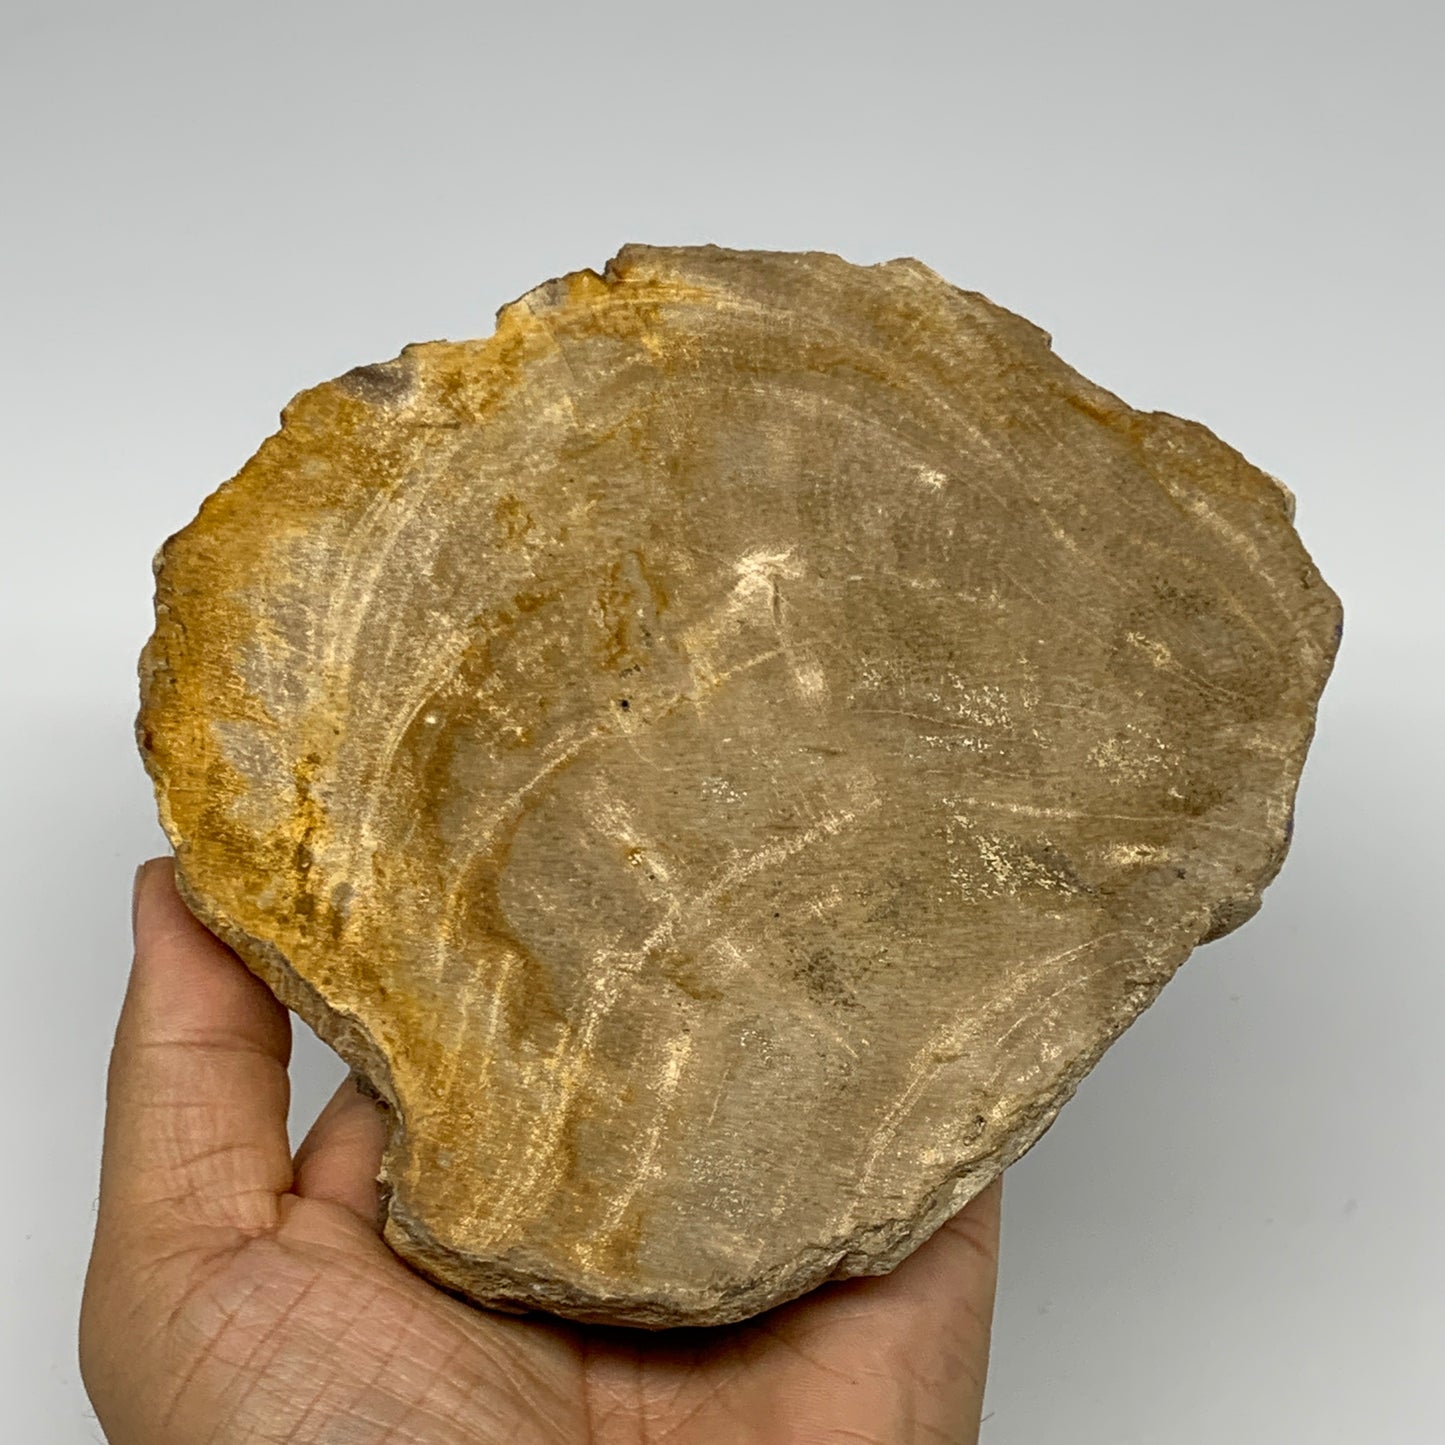 500g,5.6"x5.3"x0.7" Petrified Wood Slab Tree Branch Specimen, Minerals, B22670